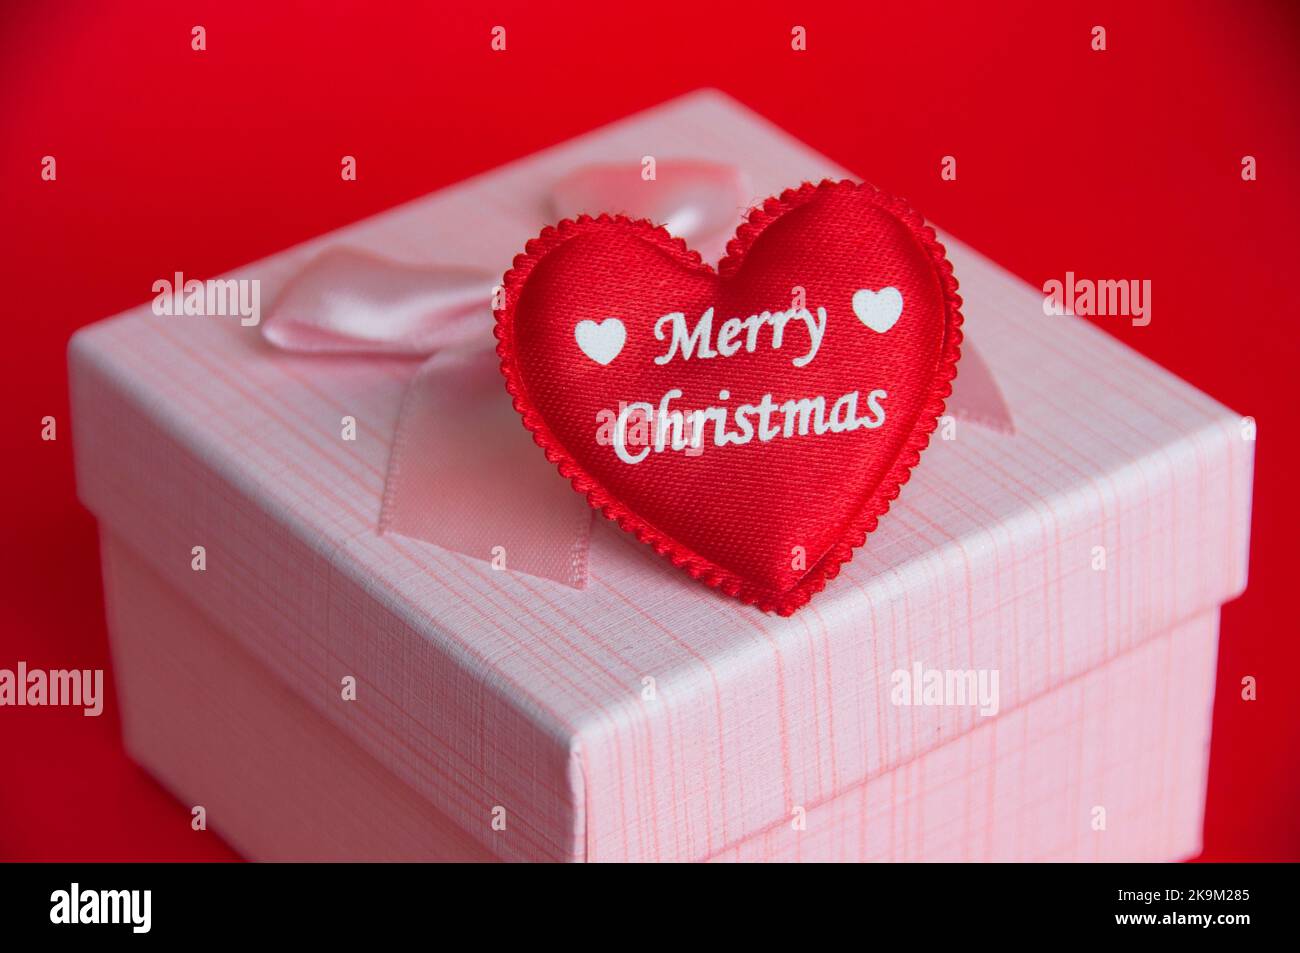 Fröhliche Weihnachten Text auf Herz-Form auf dem Geschenk auf rotem Hintergrund. Weihnachtsgeschenk und Festungskonzept. Stockfoto